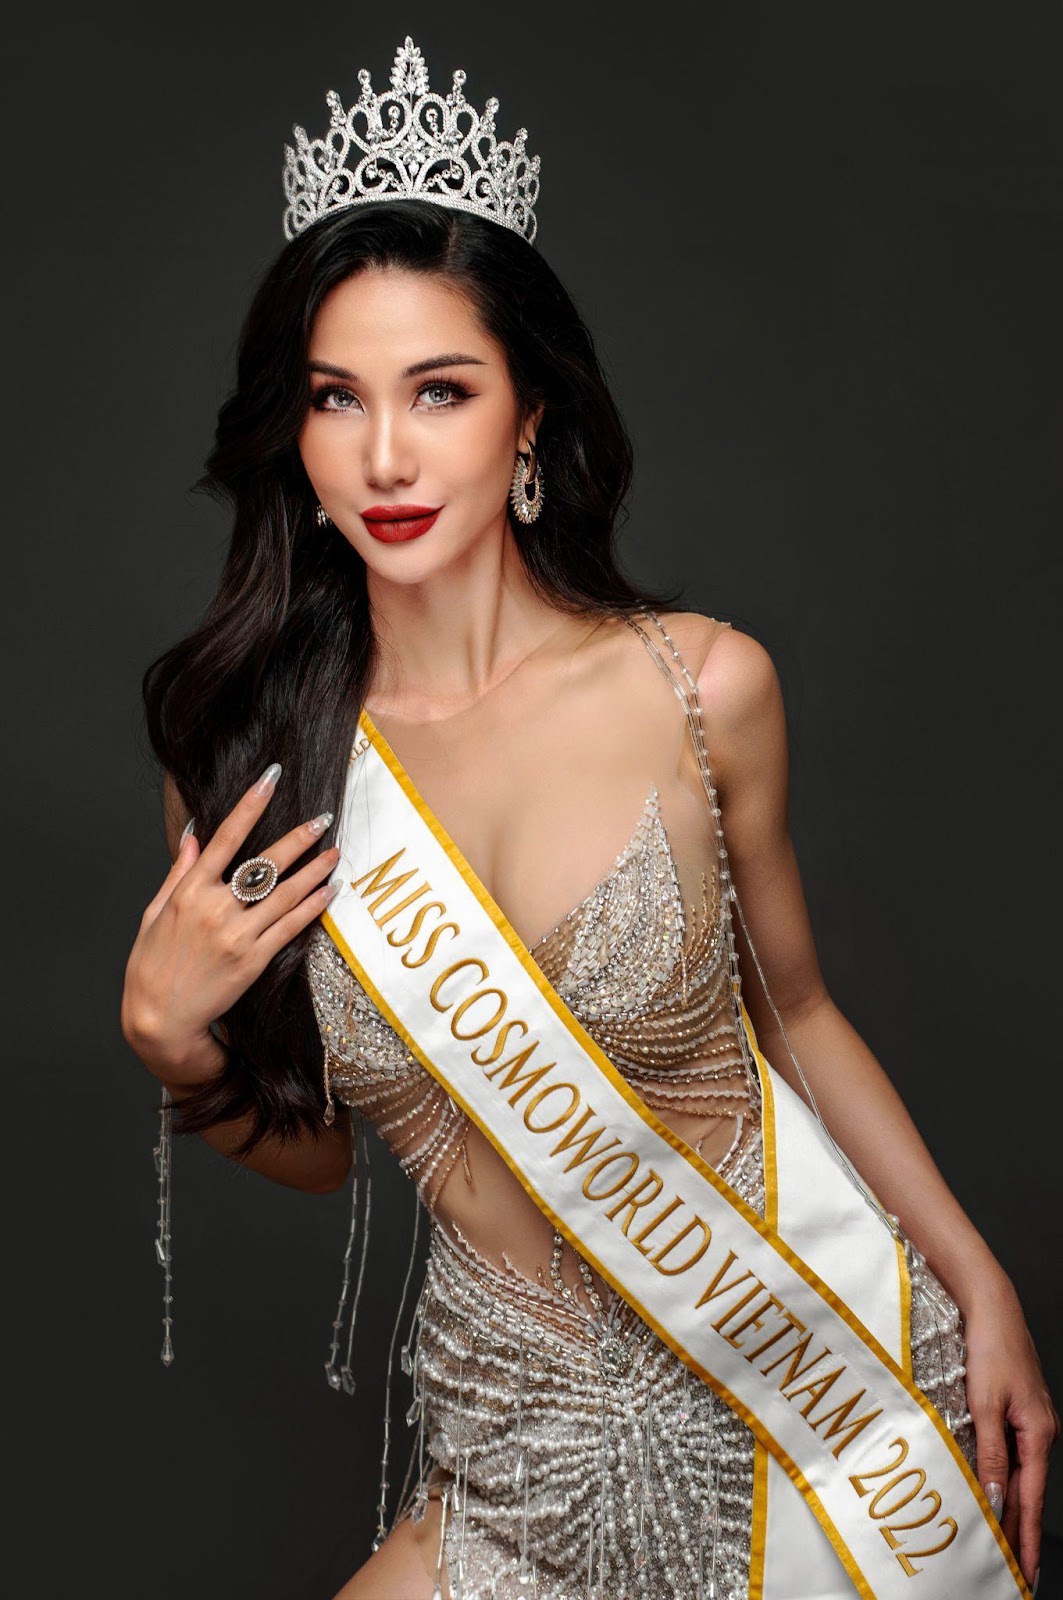 Nữ tiếp viên trưởng trẻ tuổi nhất Việt Nam - Ngọc Tuyết tham dự Miss CosmoWorld 2022